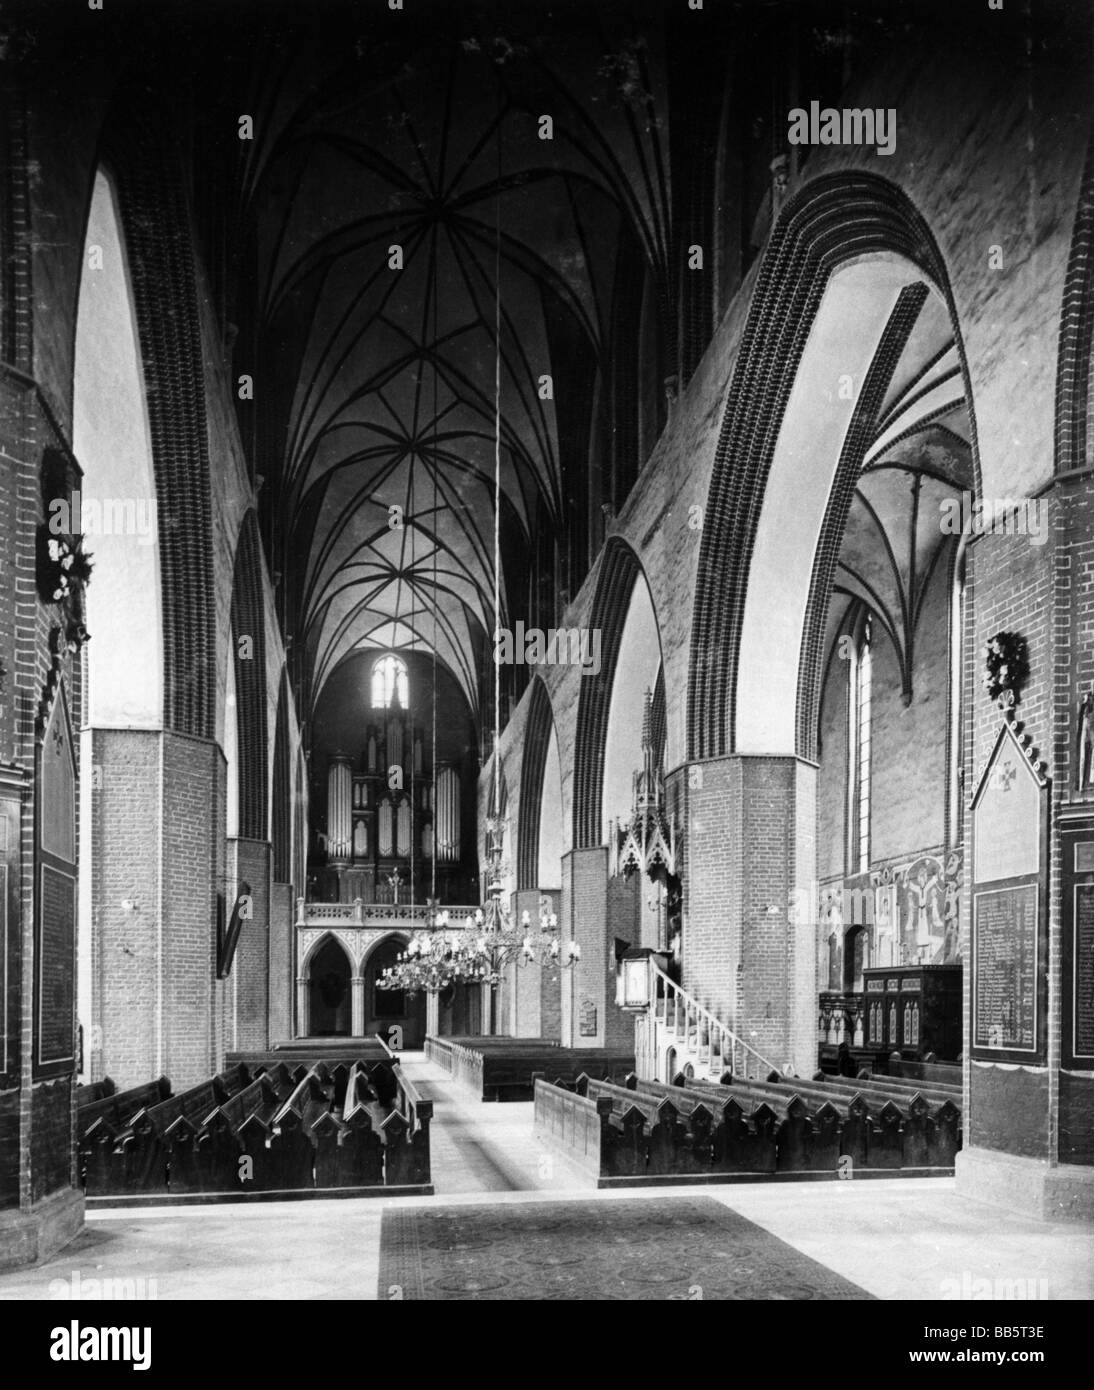 Geographie/Reise, Polen, Kwidzyn, Kathedrale, Innenansicht, Kirchenschiff, ca. 1910, Stockfoto